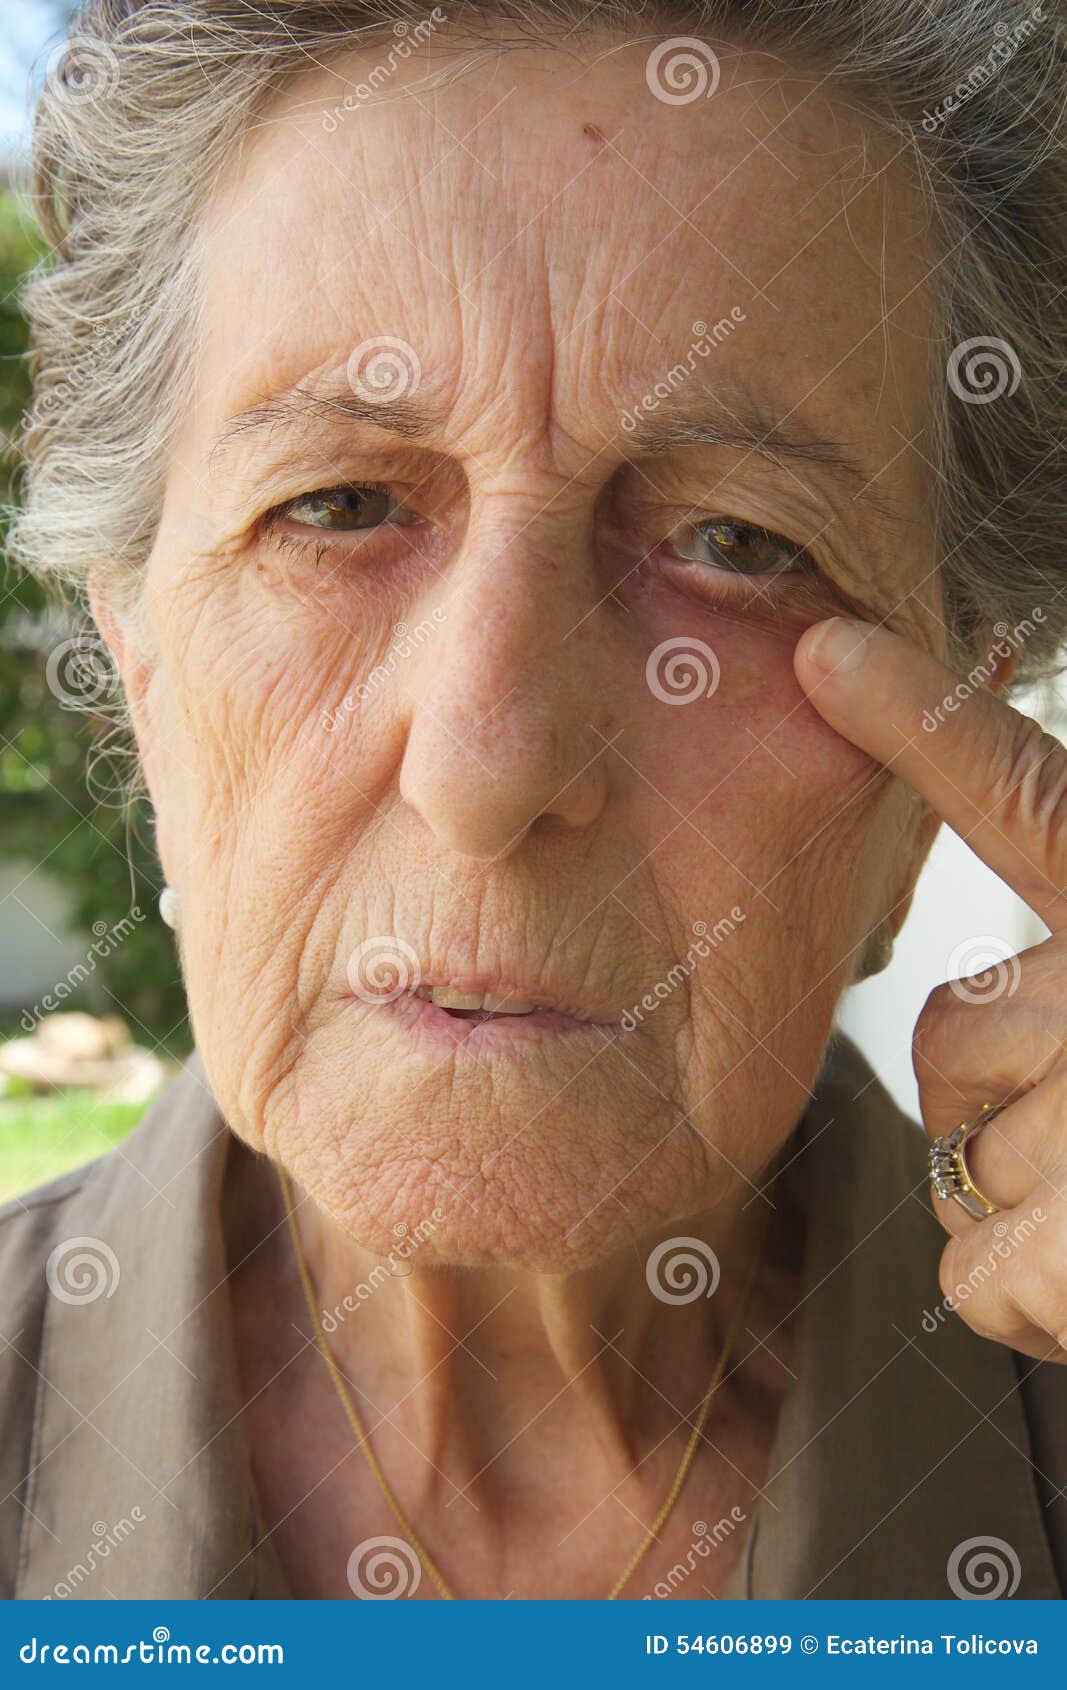 Мордочка сморщенная старушечья а глазки. Одухотворенные глаза пожилой женщины. Старая женщина с голубыми глазами.